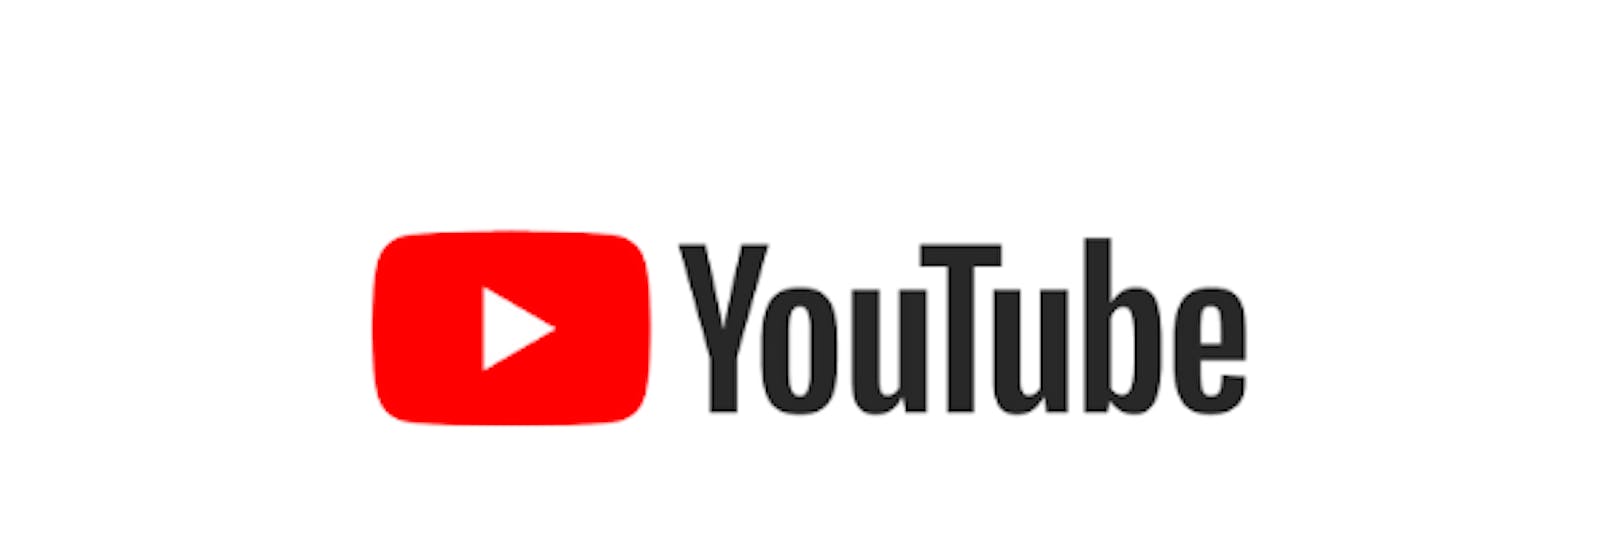 Launch der Infoseite “Wie funktioniert YouTube?”